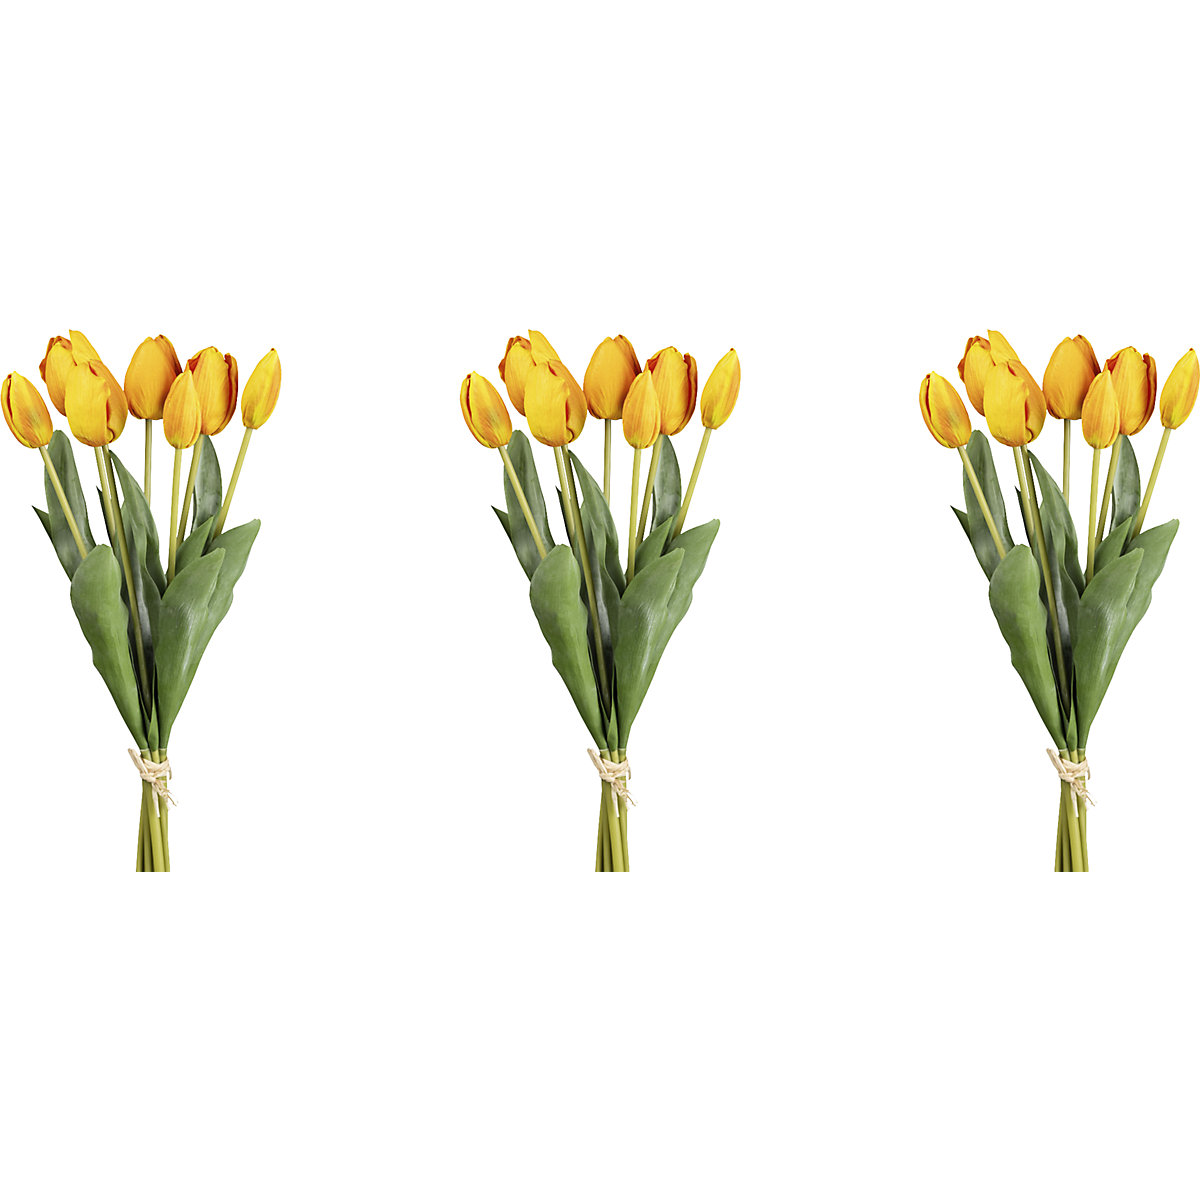 Manojo de 7 tulipanes